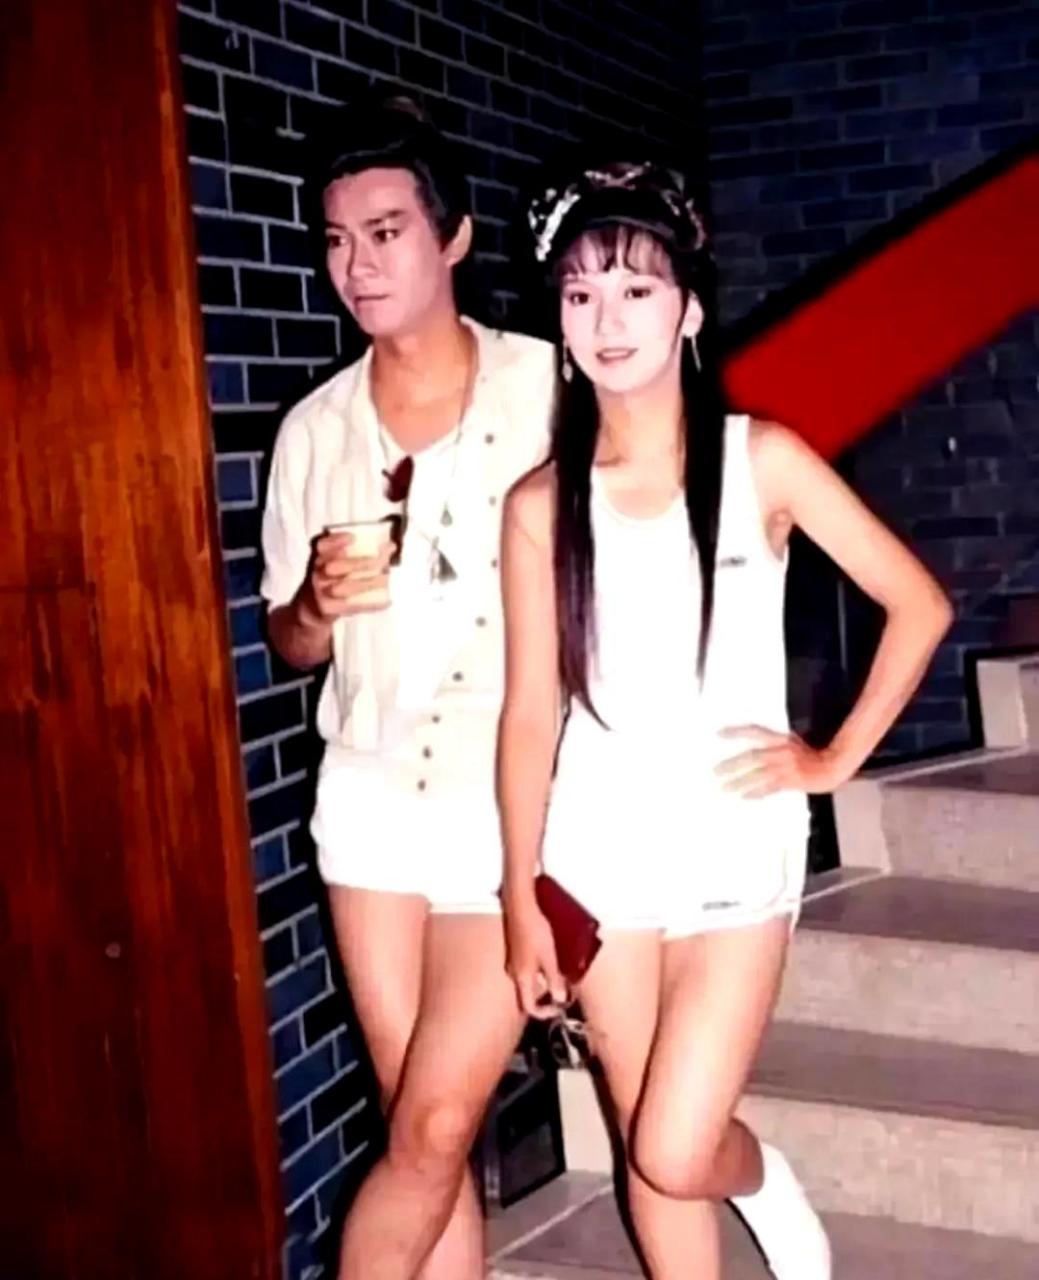 郑少秋和赵雅芝在拍摄《戏说乾隆》期间合影,他们穿着清凉,扮相十分